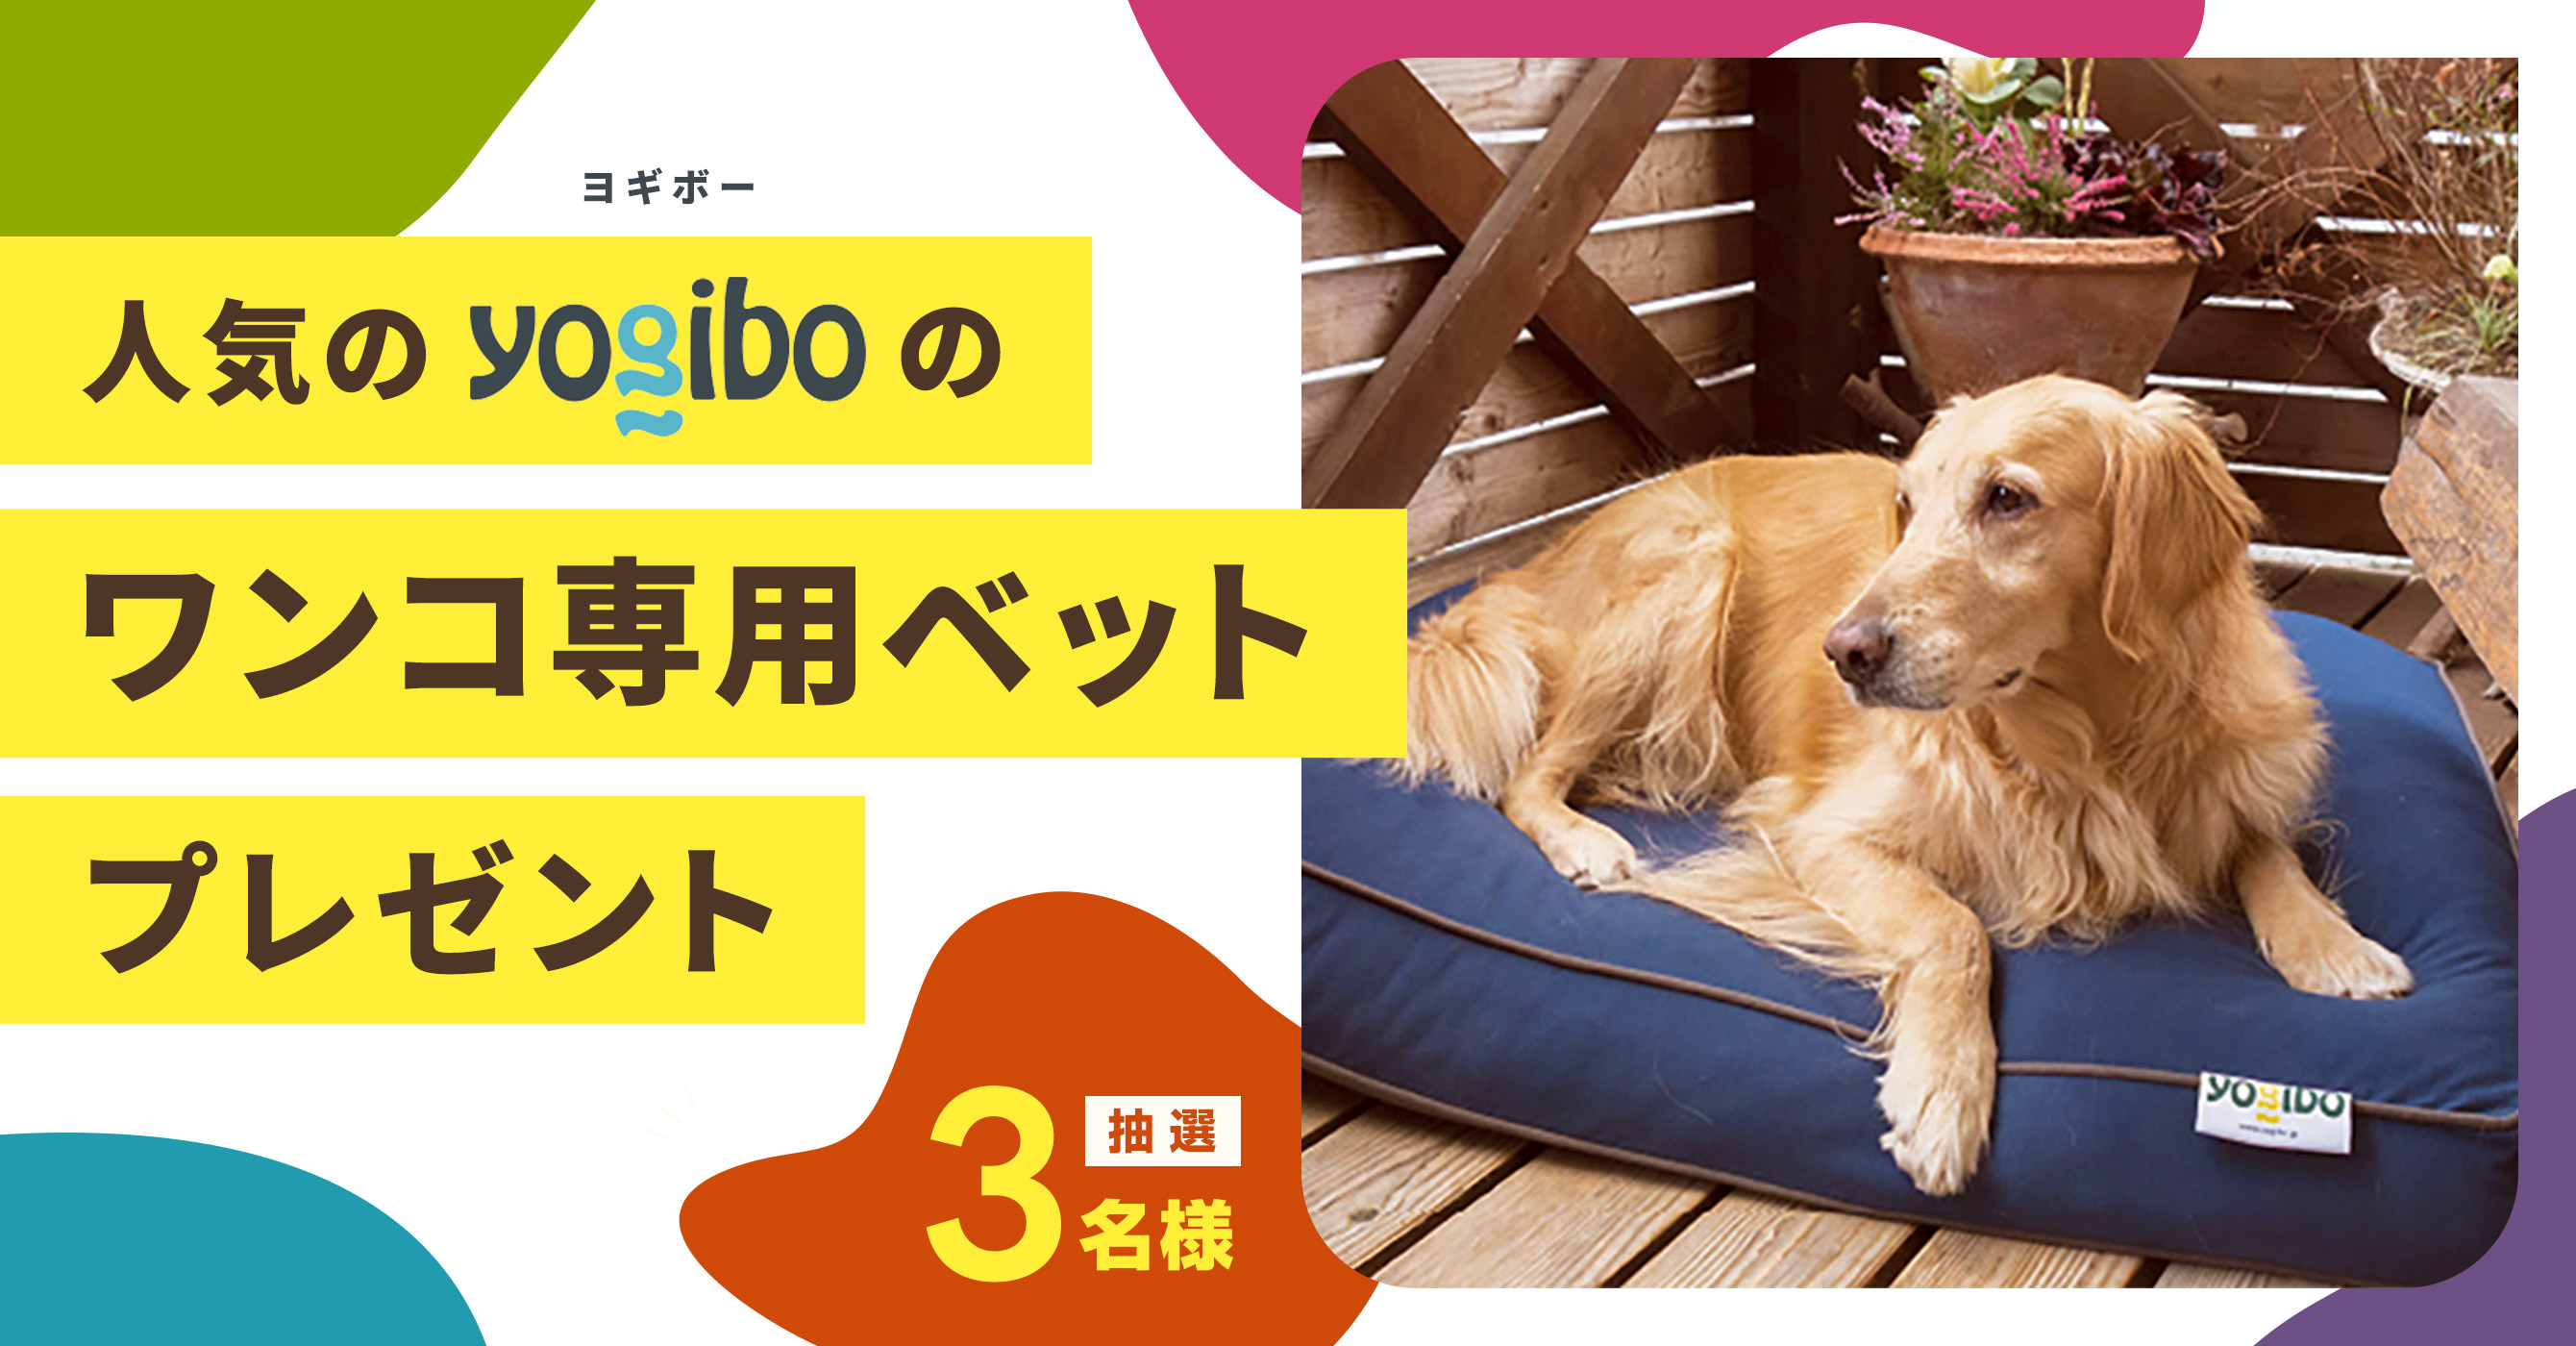 人気のyogiboのワンコ専用ベットdoggyboを抽選で３名さまにプレゼント